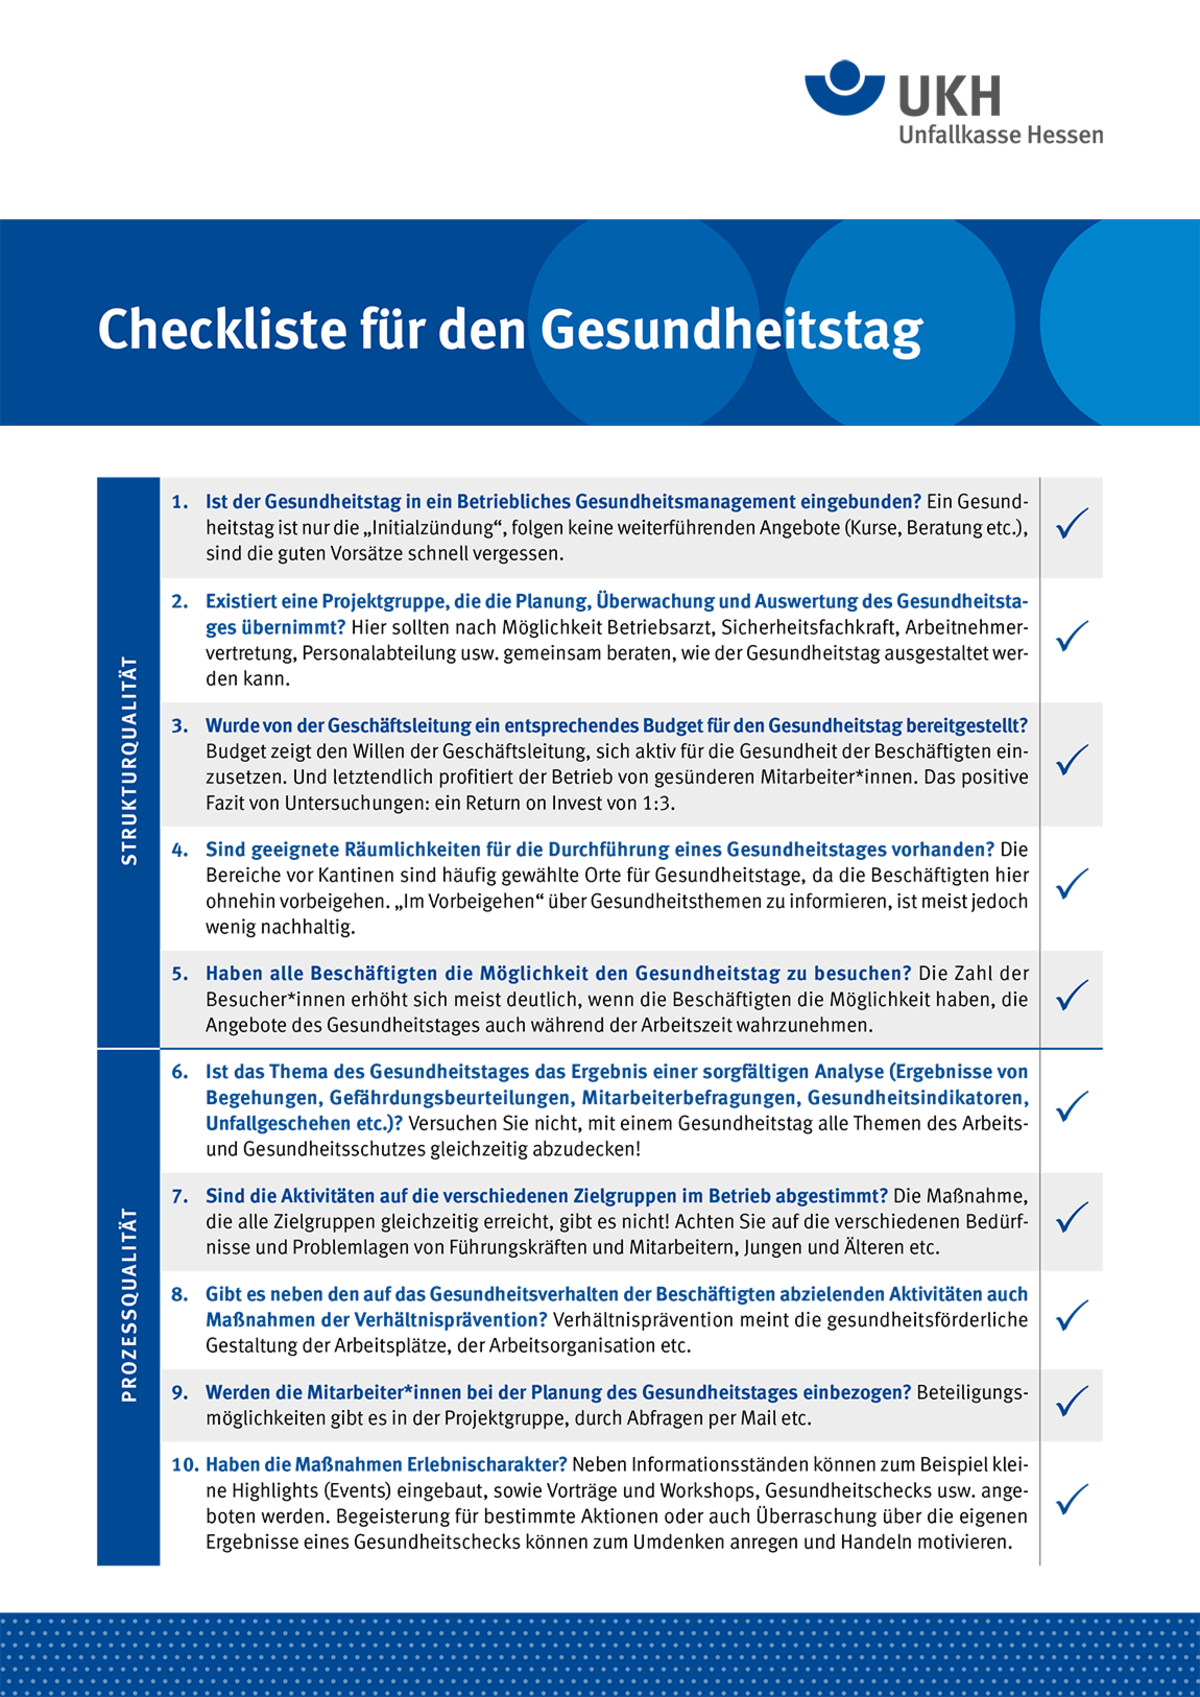 Titelseite: Merkblatt Checkliste für den Gesundheitstag